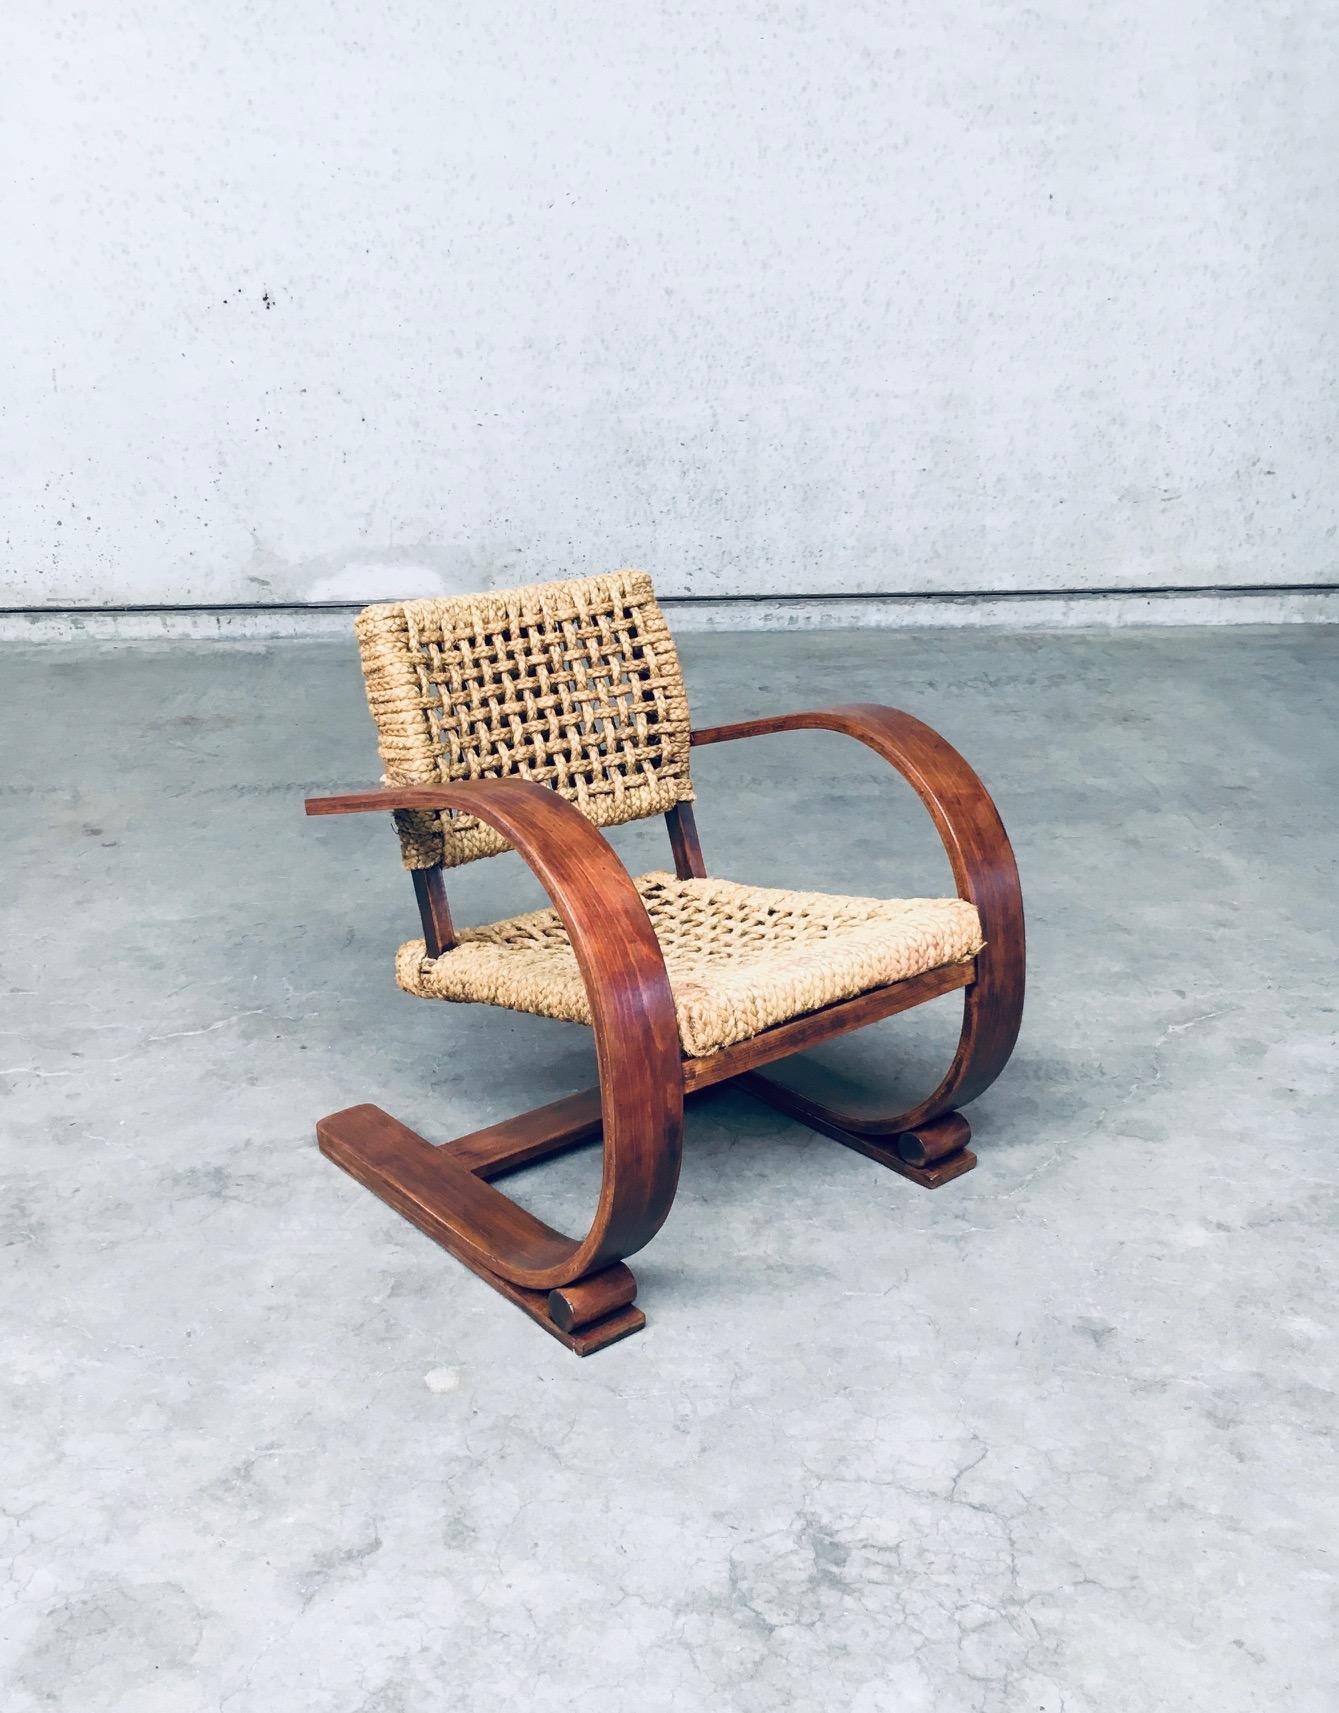 Vintage Mediterranean Design Rope Lounge Chair. Entworfen von Adrien Audoux & Frida Minet für Vibo Vesoul. Hergestellt in Frankreich in den 1930er/40er Jahren. Gebogenes, dunkler gebeiztes Bugholzgestell mit Sitz und Rückenlehne aus geflochtenem